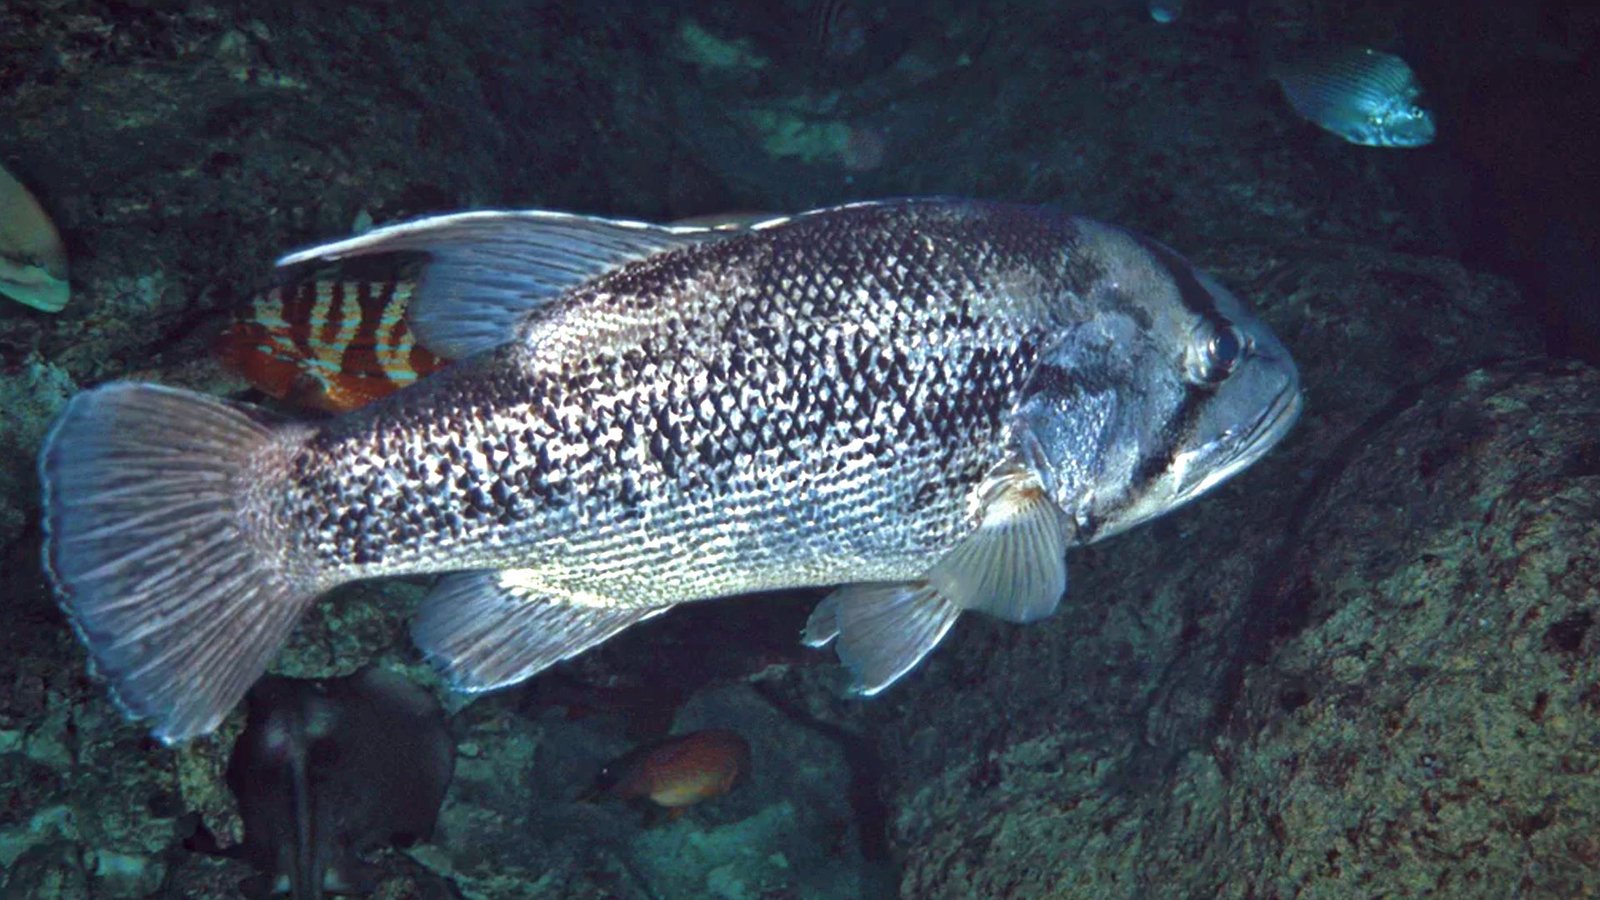 West Australian Dhufish Underwater